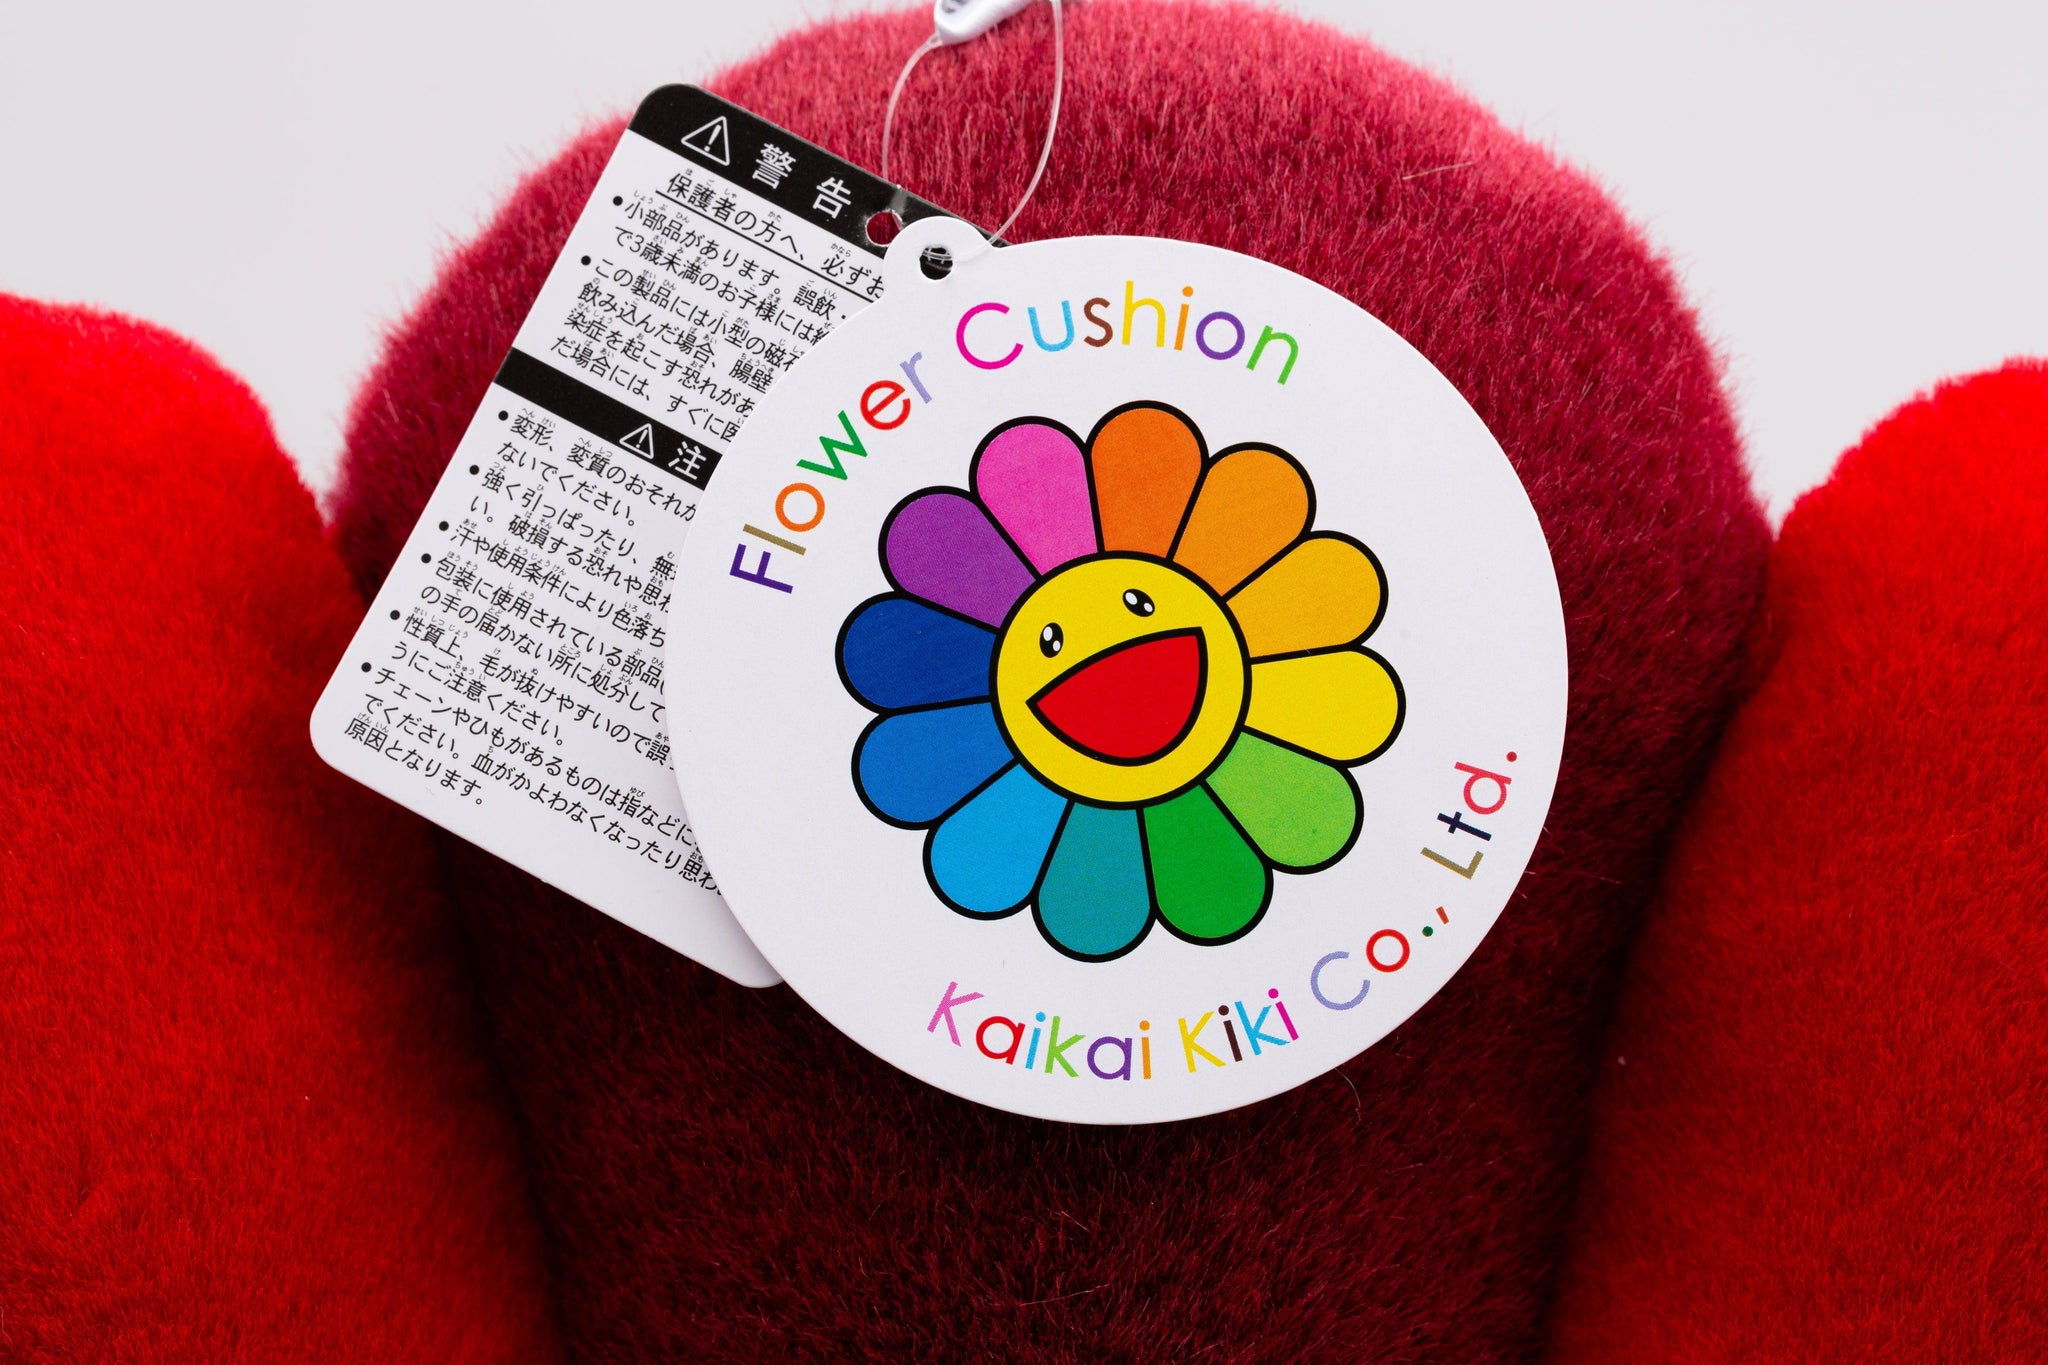 Real vs. Fake: Takashi Murakami Flower Plush 